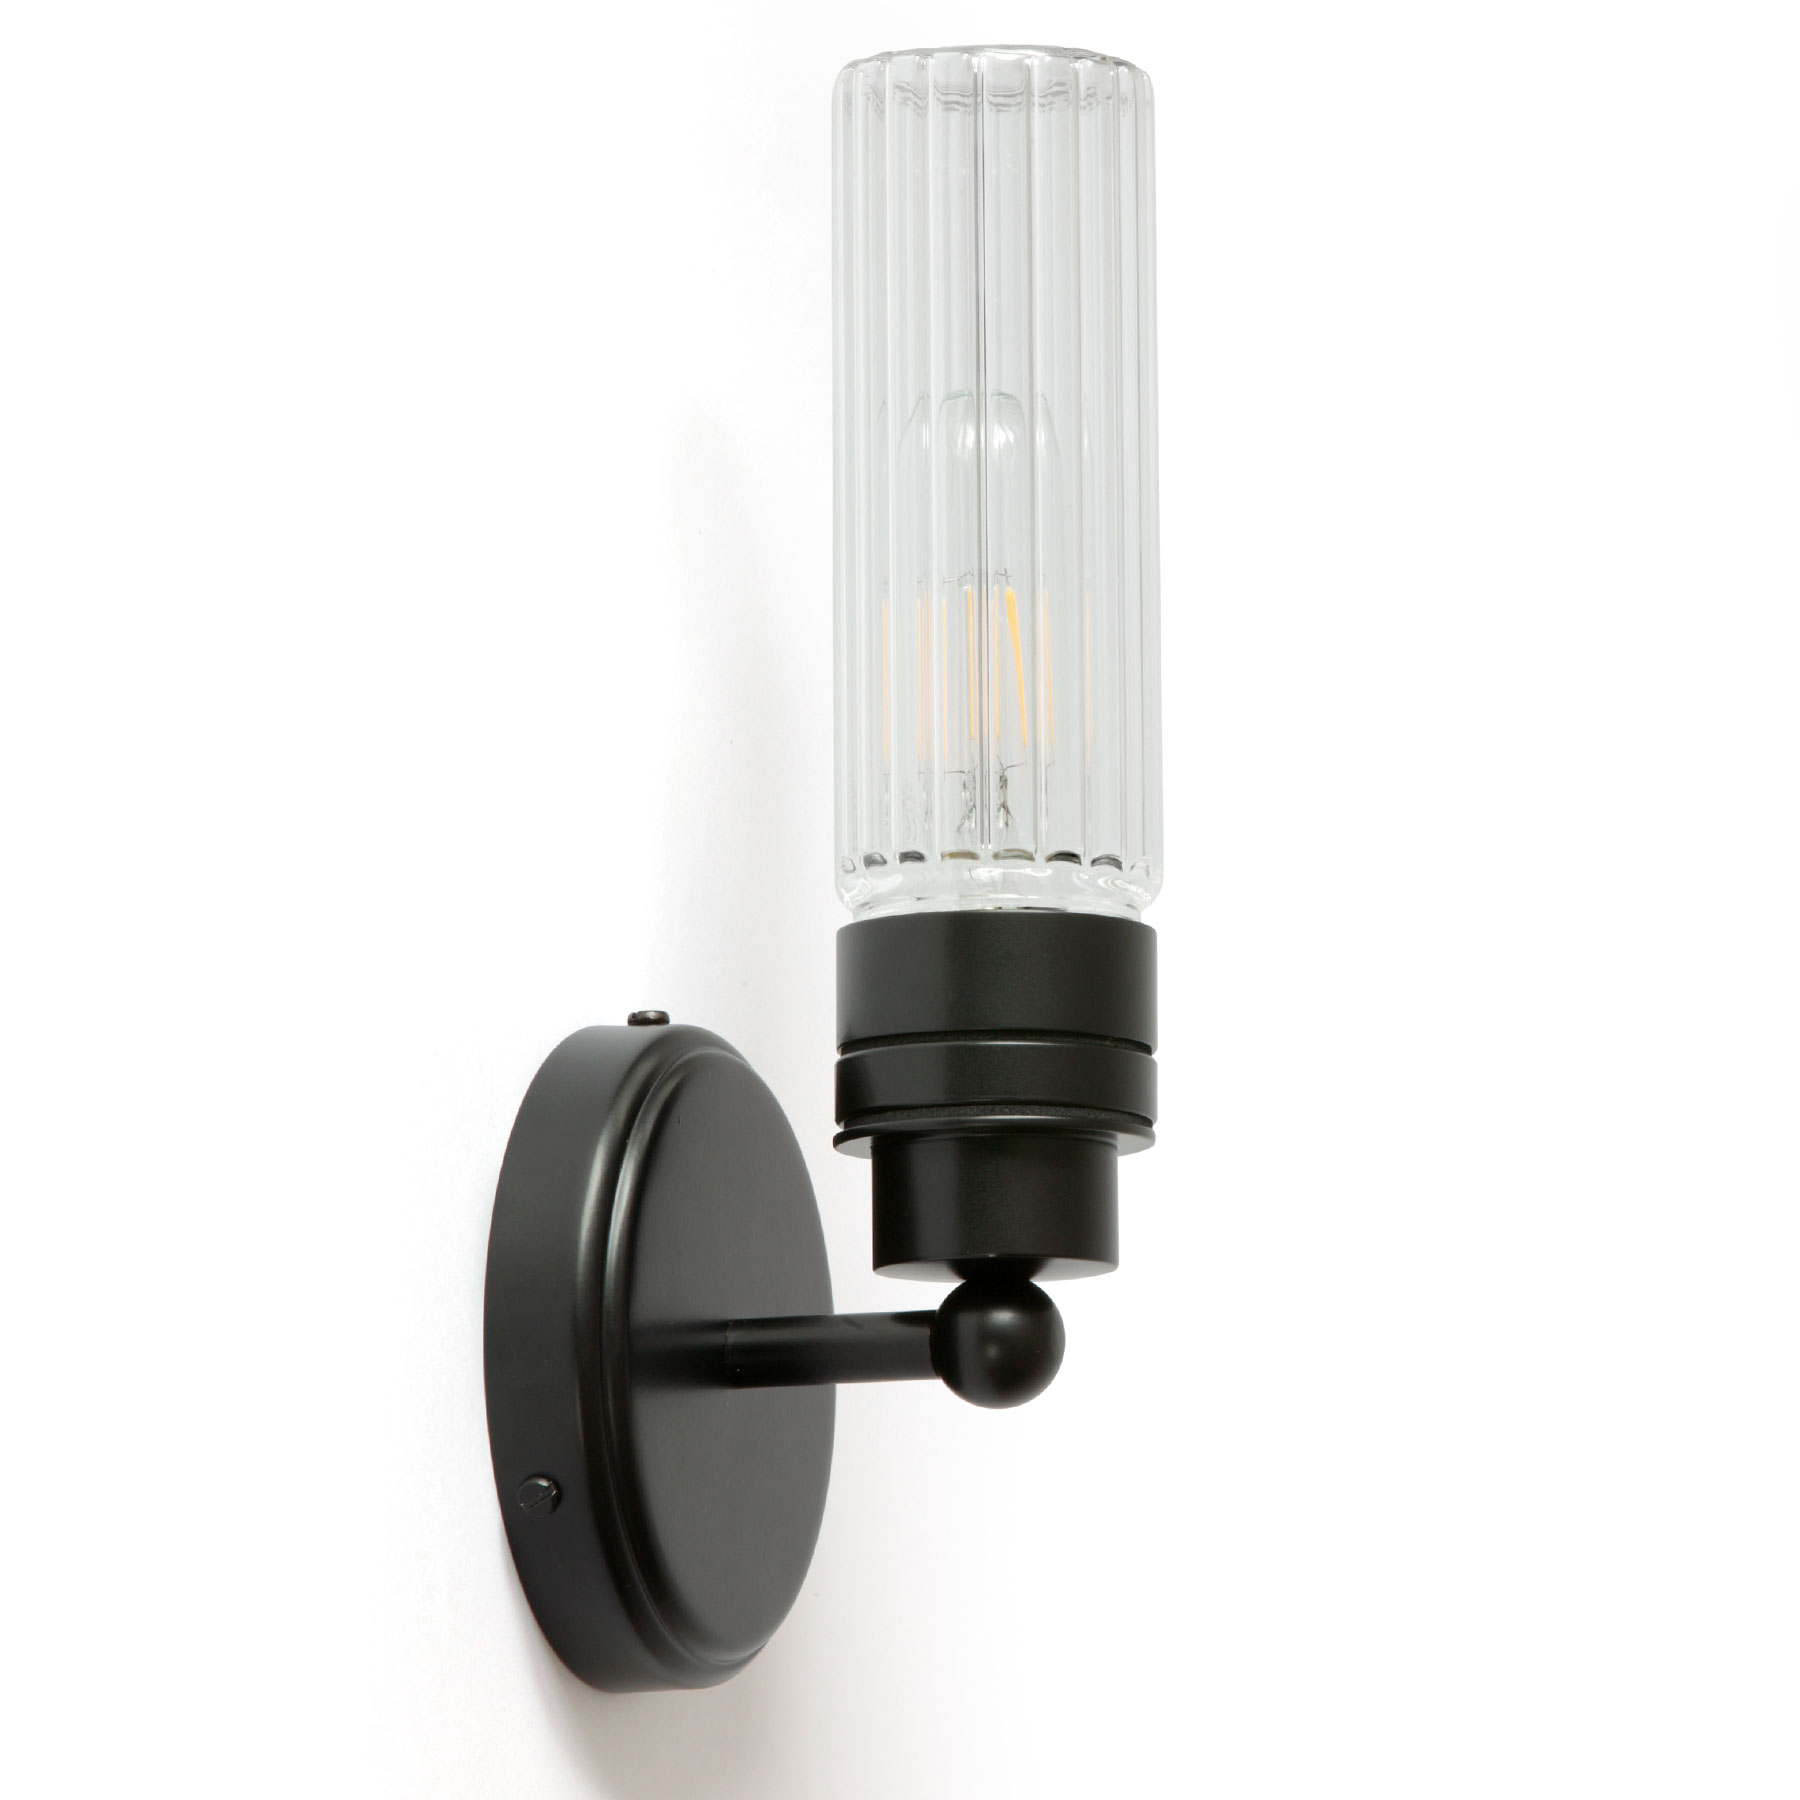 Badezimmer-Wandlampe mit klarem oder prismatischem Glaszylinder, IP65: Badezimmer-Wandlampe kleinem Glas-Zylinder, hier in matt-schwarz, prismatisches Glas